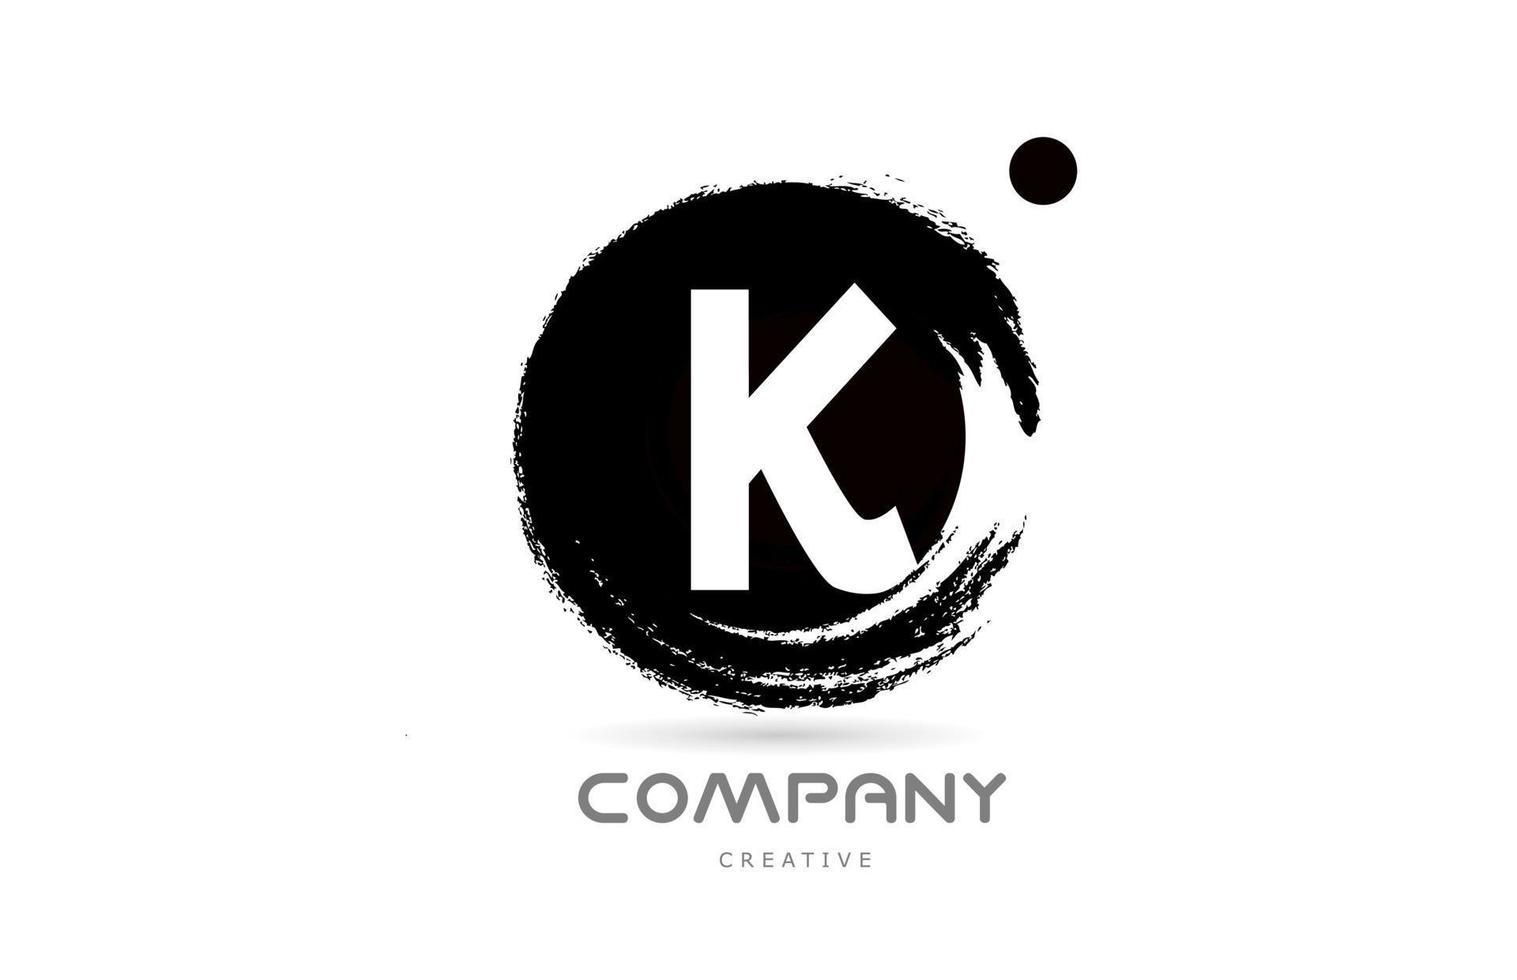 k diseño de icono de logotipo de letra de alfabeto grunge blanco y negro con letras de estilo japonés. plantilla creativa para empresa y negocio vector